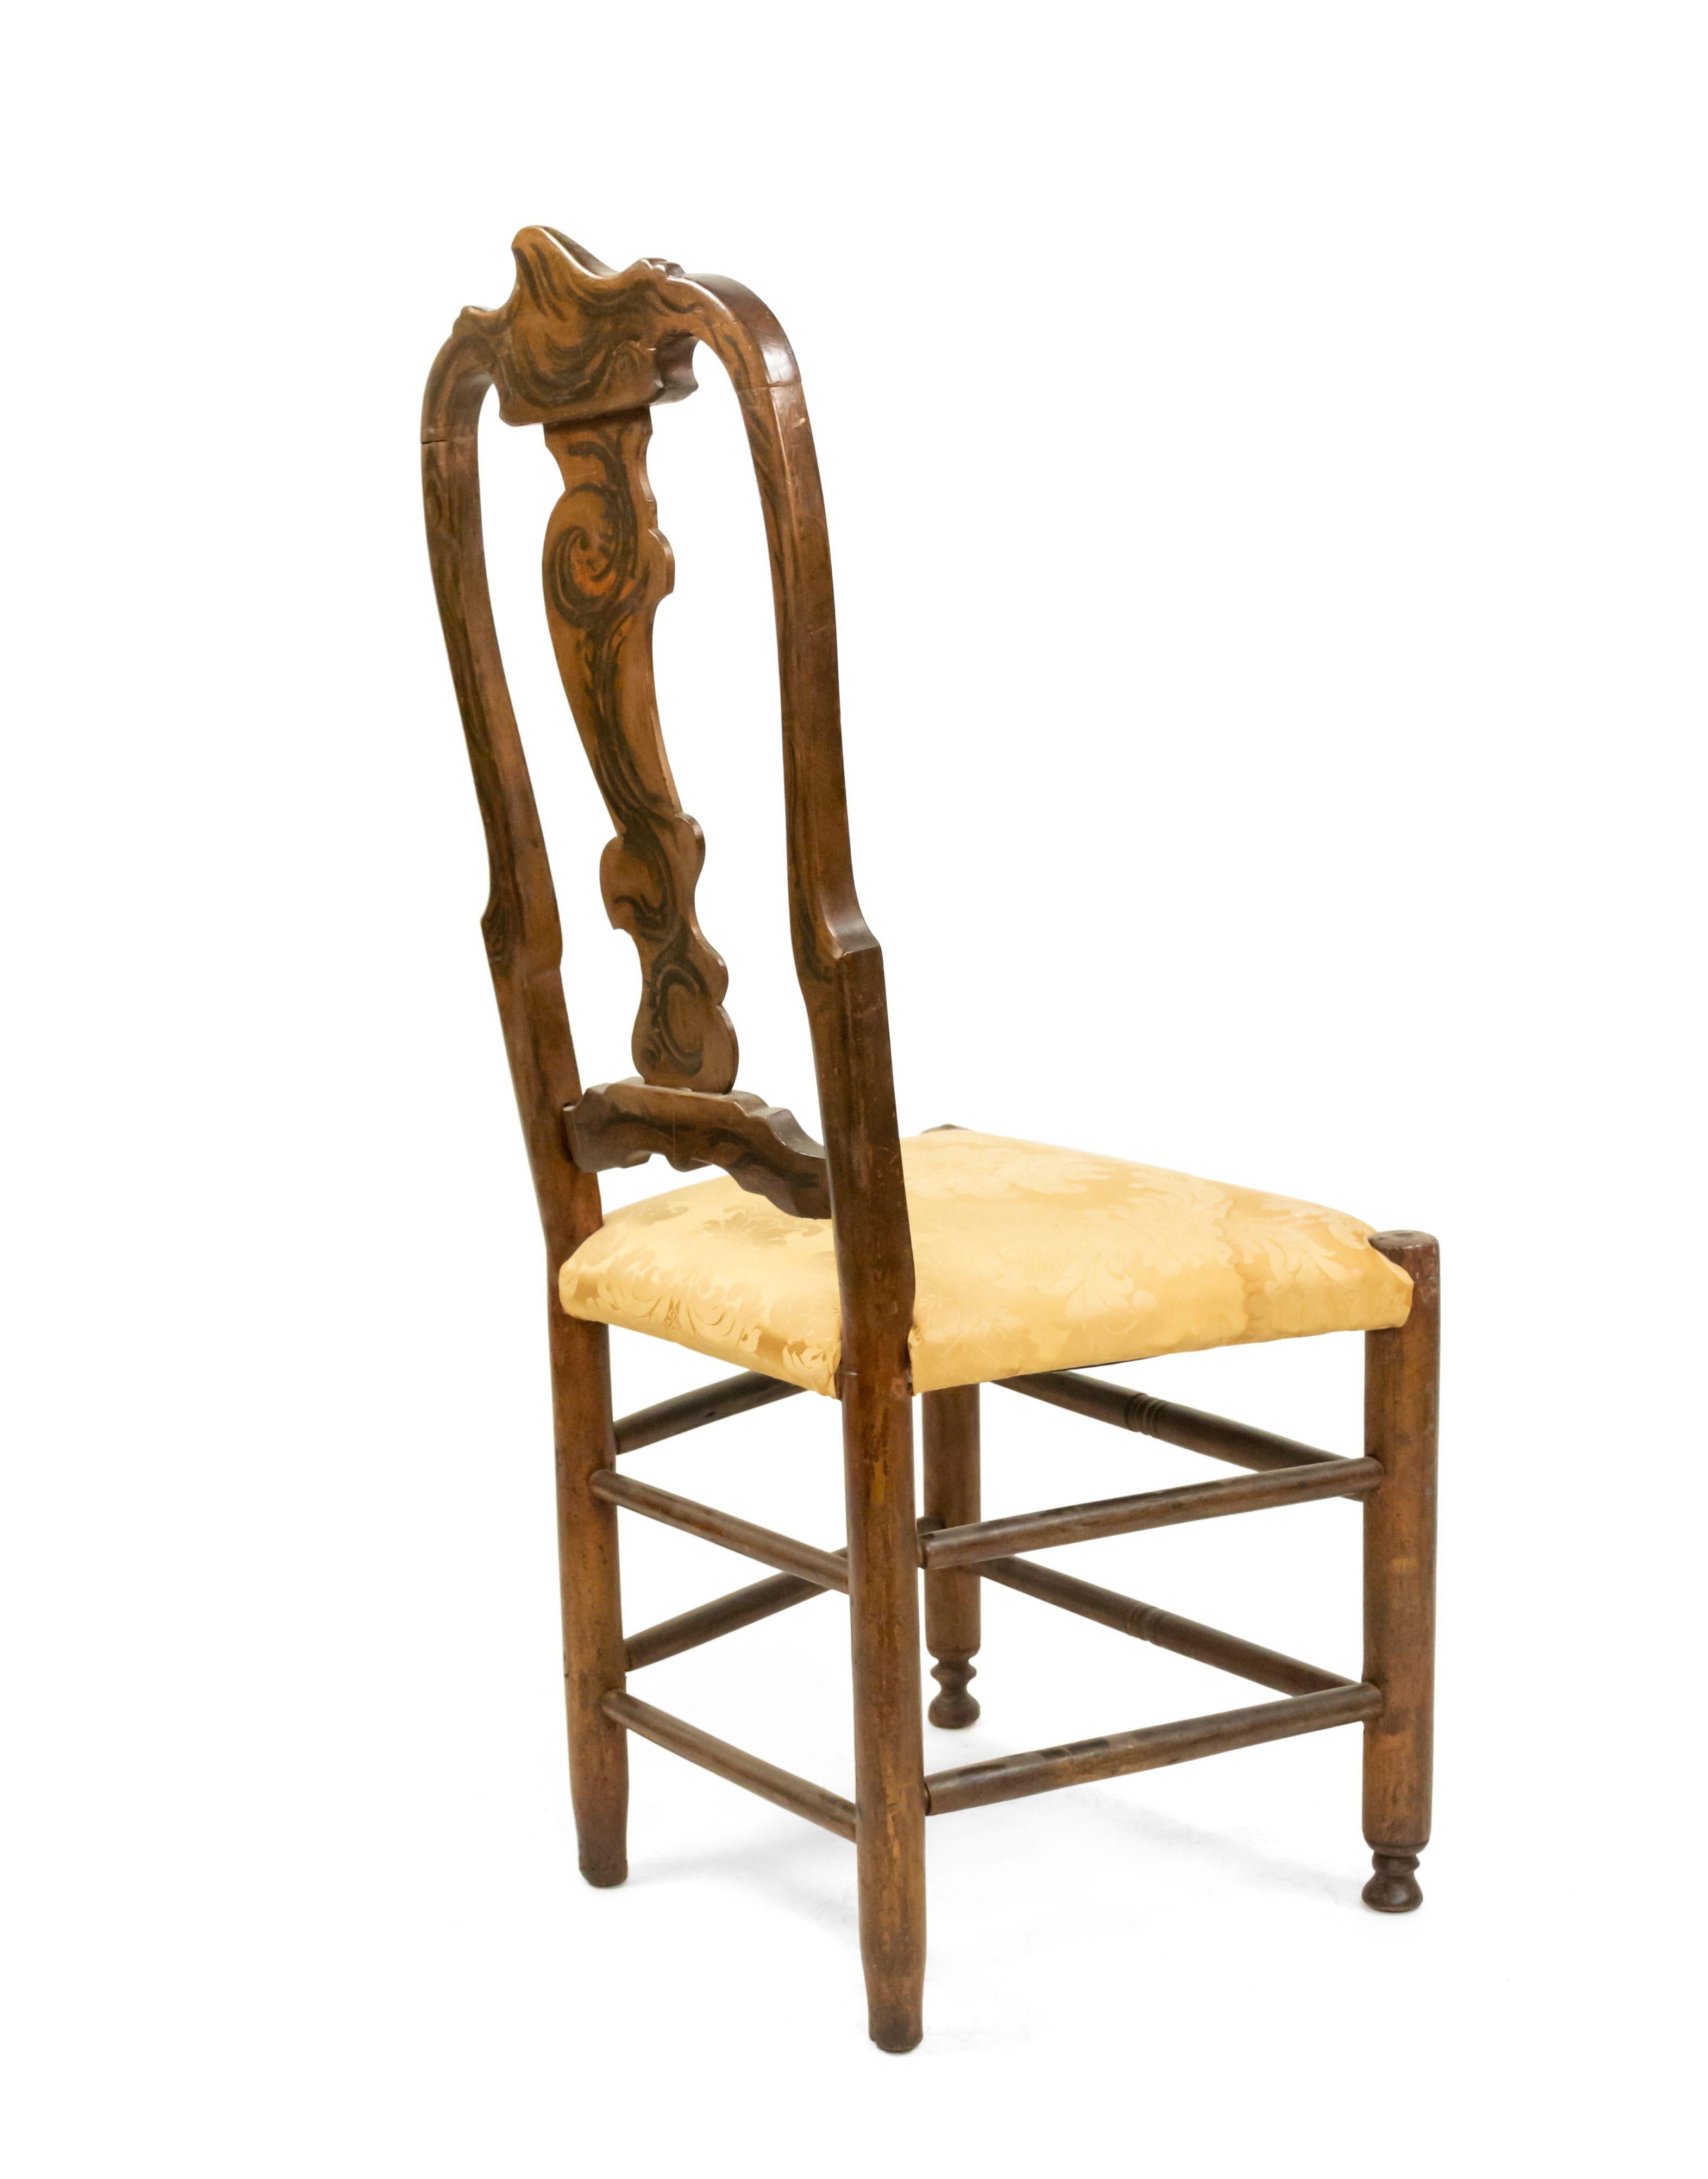 Paire de chaises d'appoint de style vénitien italien du 18ème et 19ème siècle, peintes avec un dossier en forme de gouttière, avec une assise rembourrée.